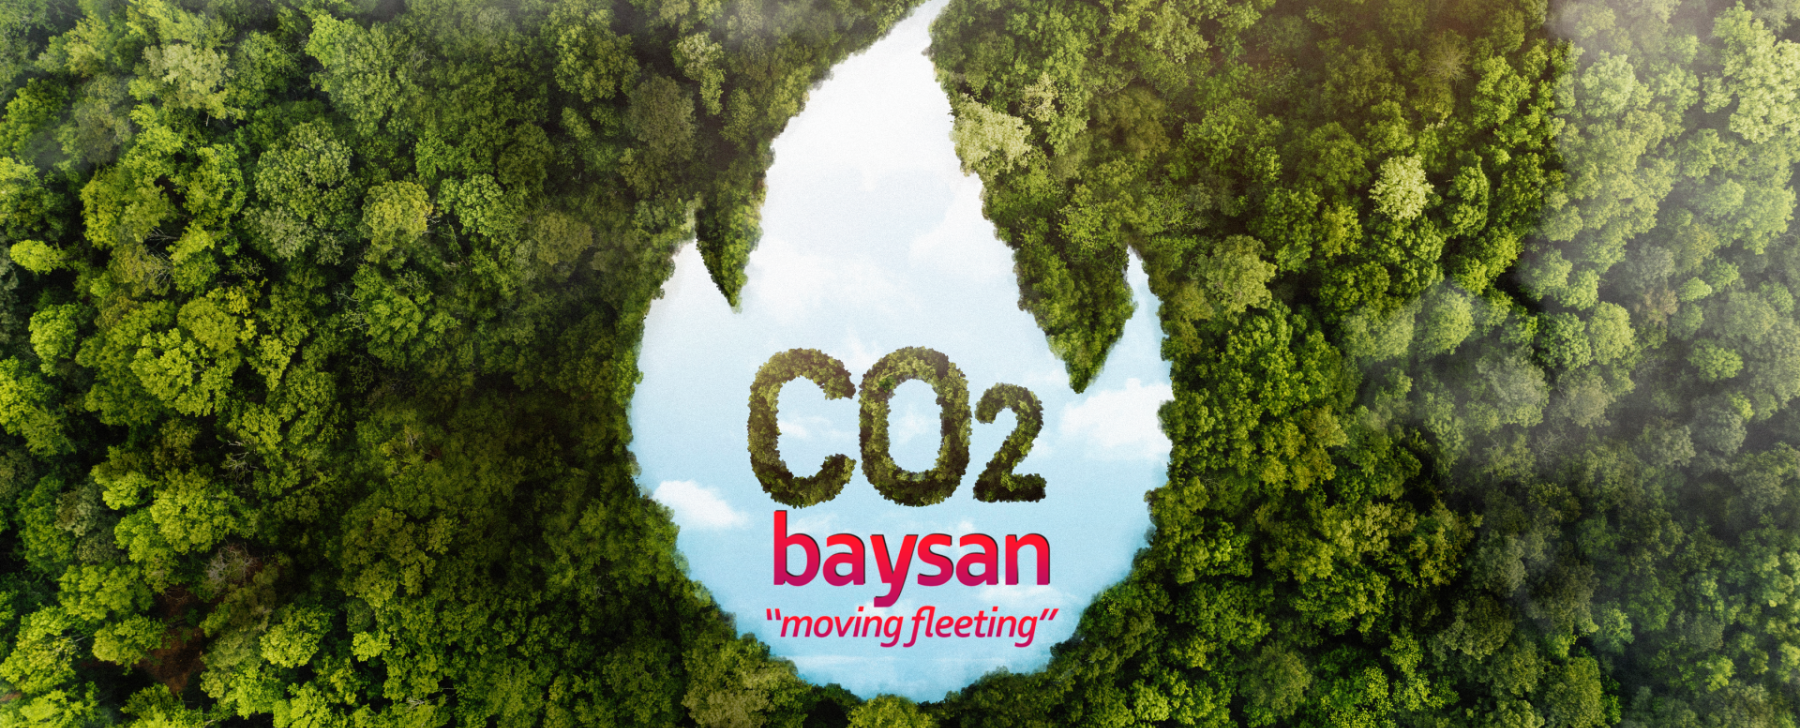 Nuevas normativas de información sobre las emisiones de CO2 y consumo